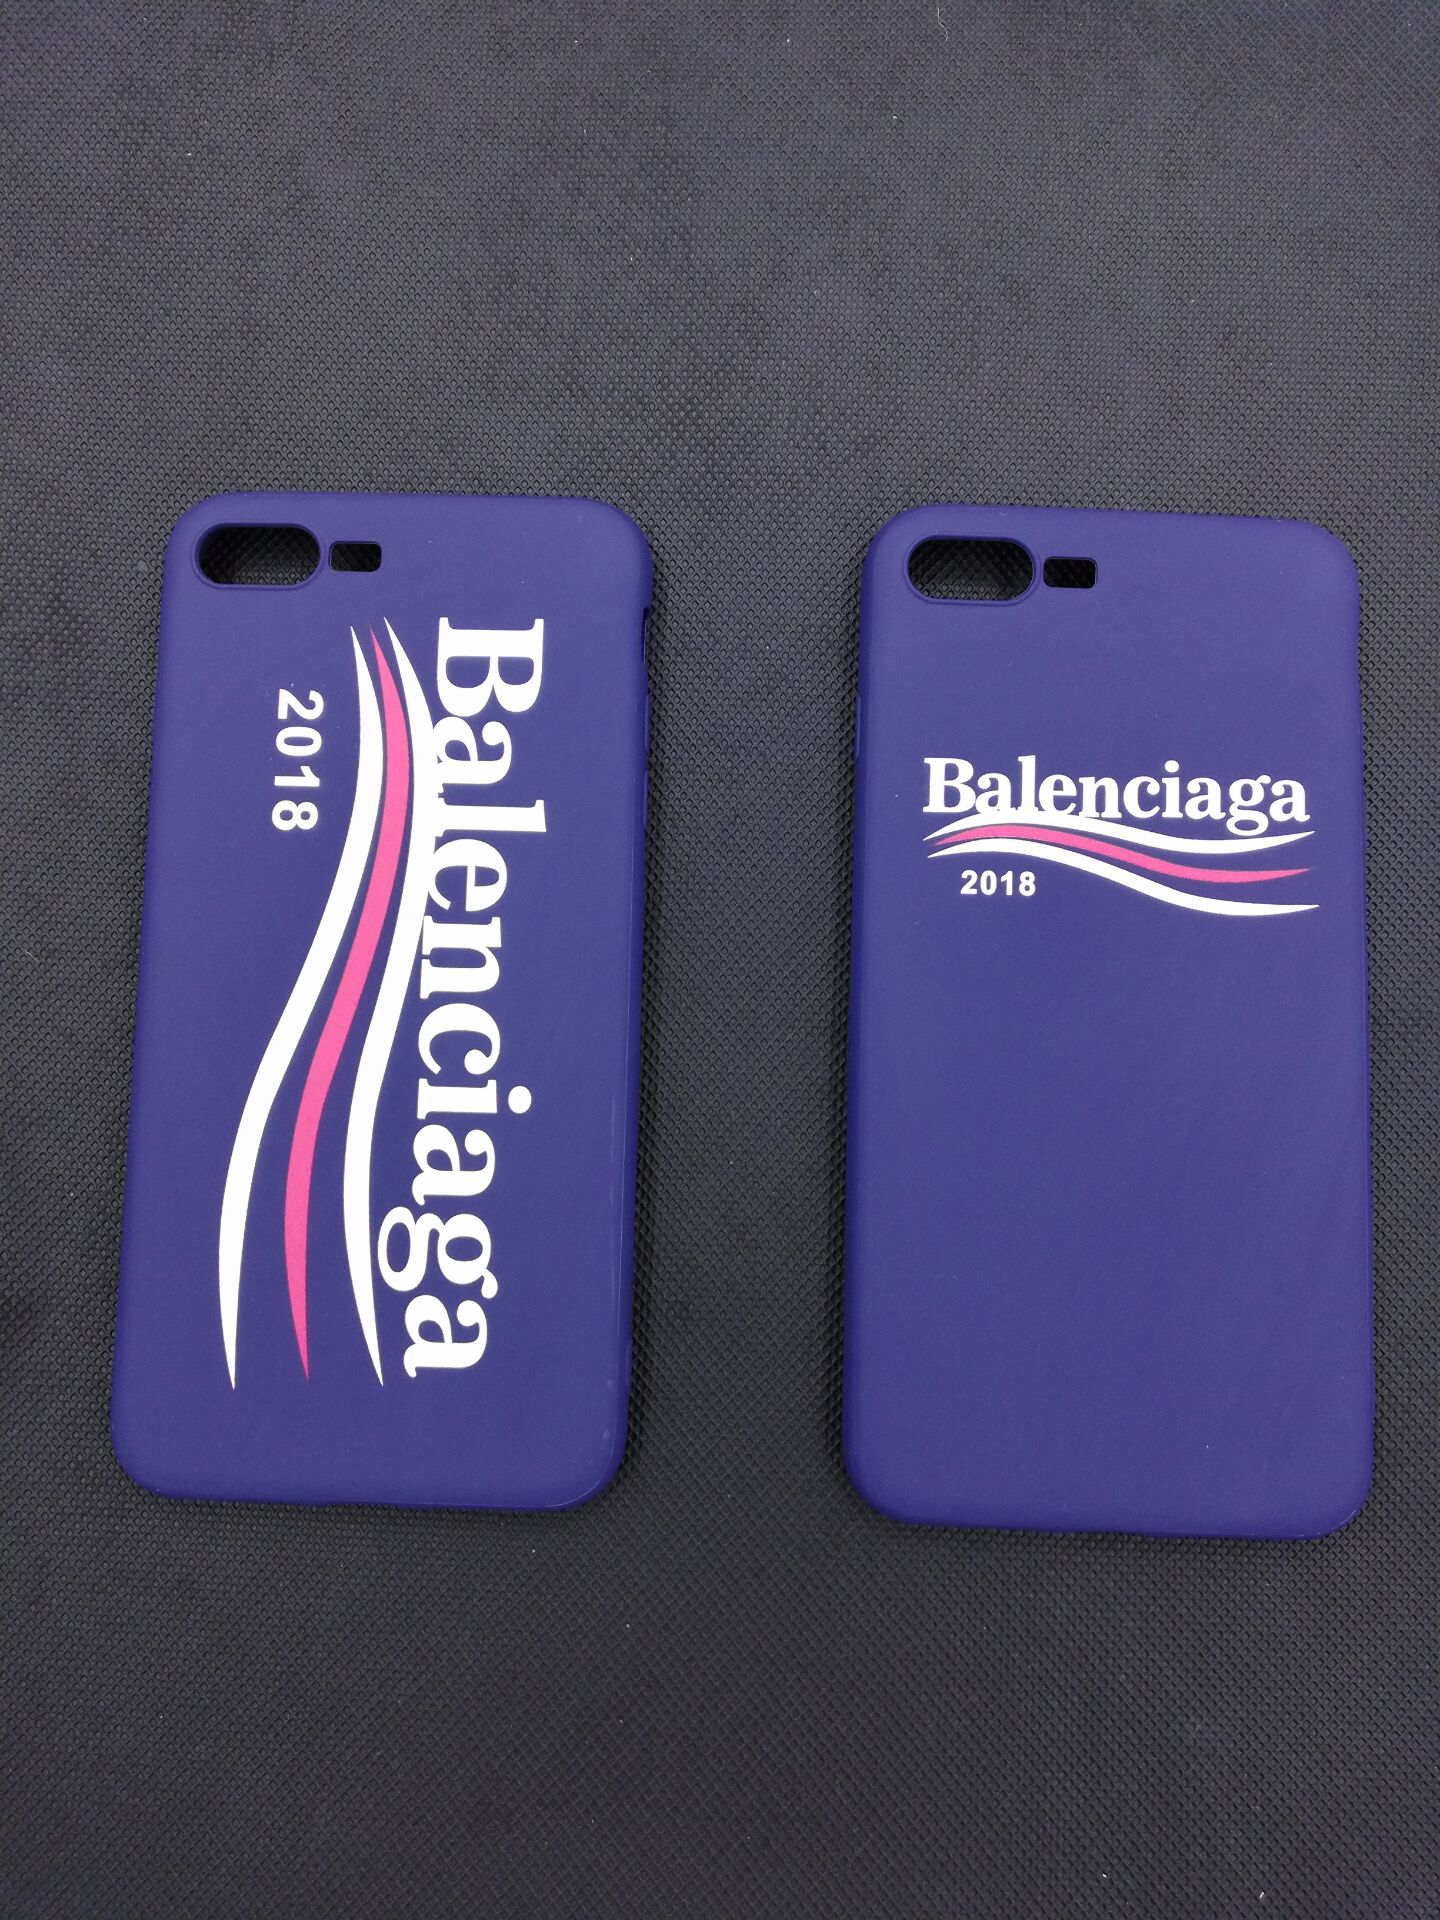 バレンシアガinsアイフォン7Plus/7/6s携帯カバー有名人芸能人iPhone7/6splus欧米スマホケースiphonex耐衝撃個性的